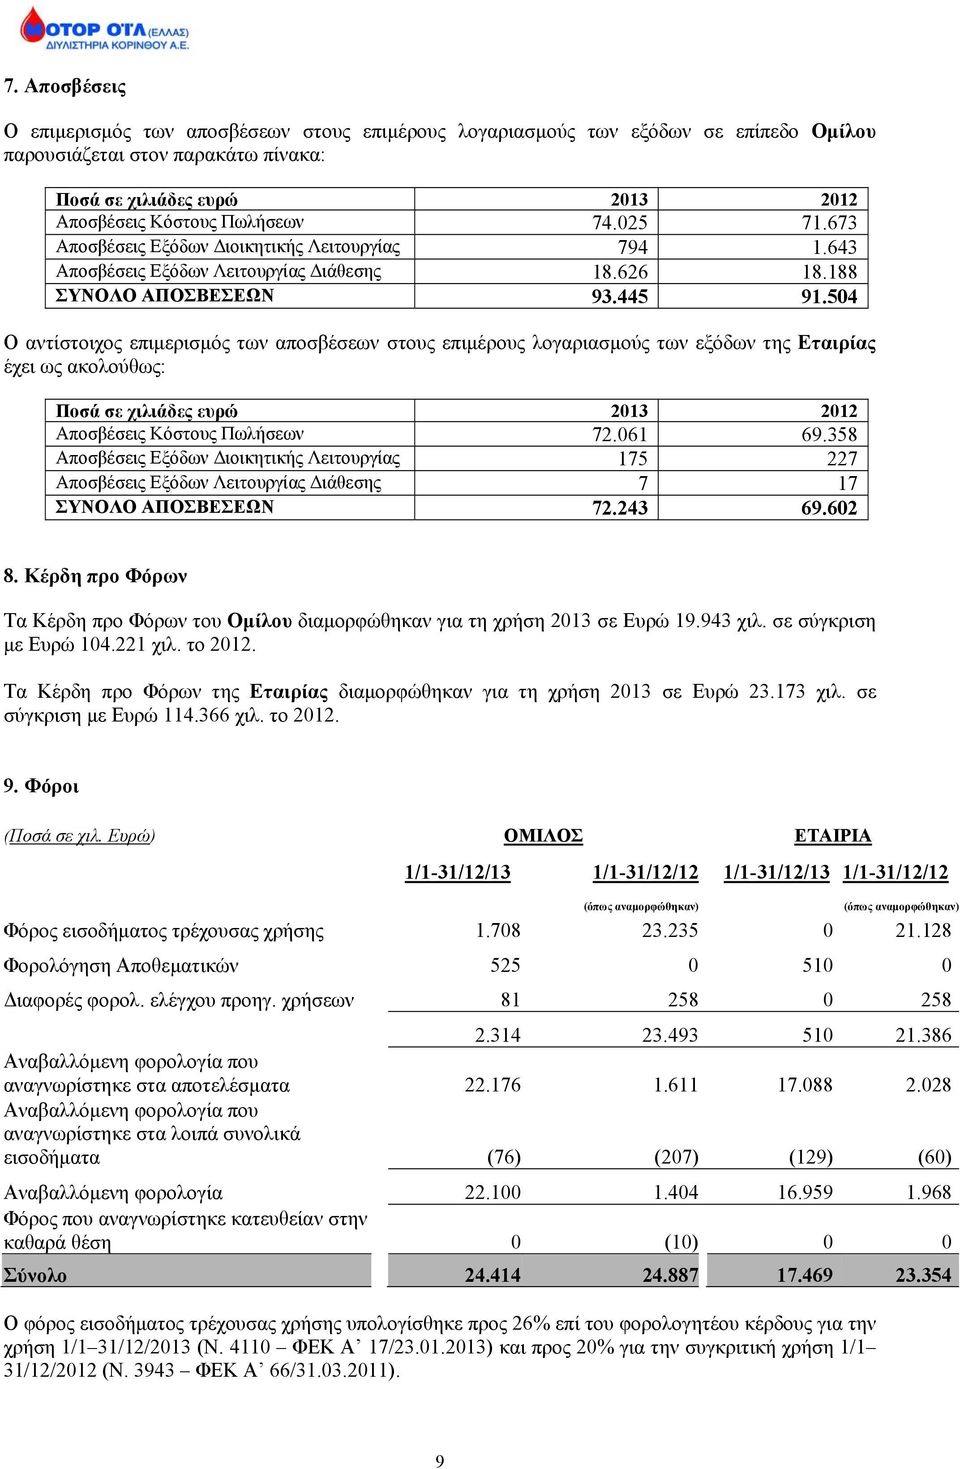 504 Ο αντίστοιχος επιμερισμός των αποσβέσεων στους επιμέρους λογαριασμούς των εξόδων της Εταιρίας έχει ως ακολούθως: Ποσά σε χιλιάδες ευρώ 2013 2012 Αποσβέσεις Κόστους Πωλήσεων 72.061 69.